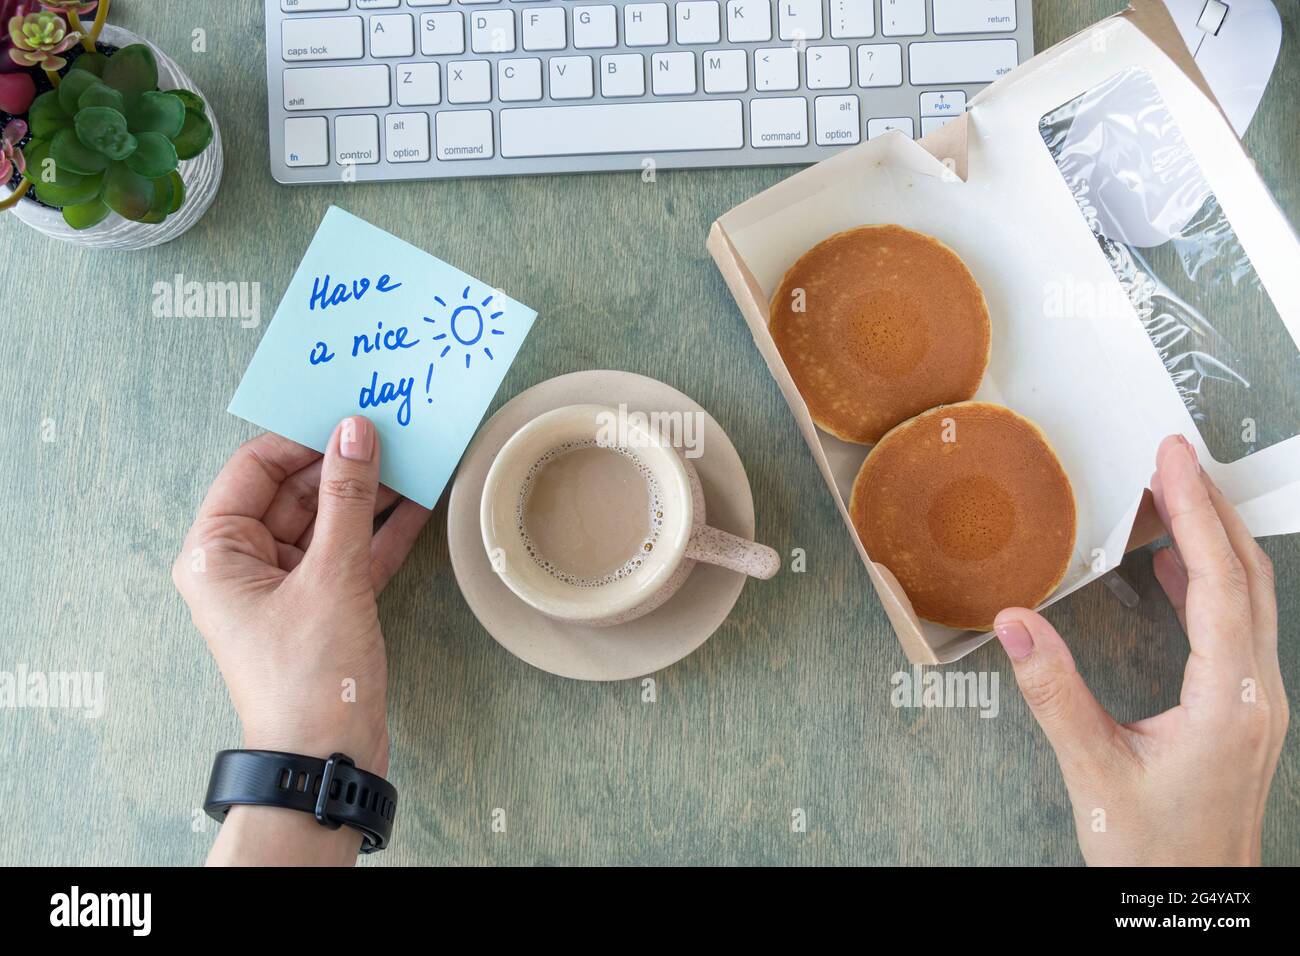 Weibliche Hände halten Notiz mit Worten HABEN EINEN SCHÖNEN TAG, Pfannkuchen in Papierbox, Tasse Kaffee, Tastatur, Kaktus und Mause auf einem Holztisch. Konzept für einen guten Start in den Tag. Draufsicht auf dem Desktop. Flach liegend Stockfoto